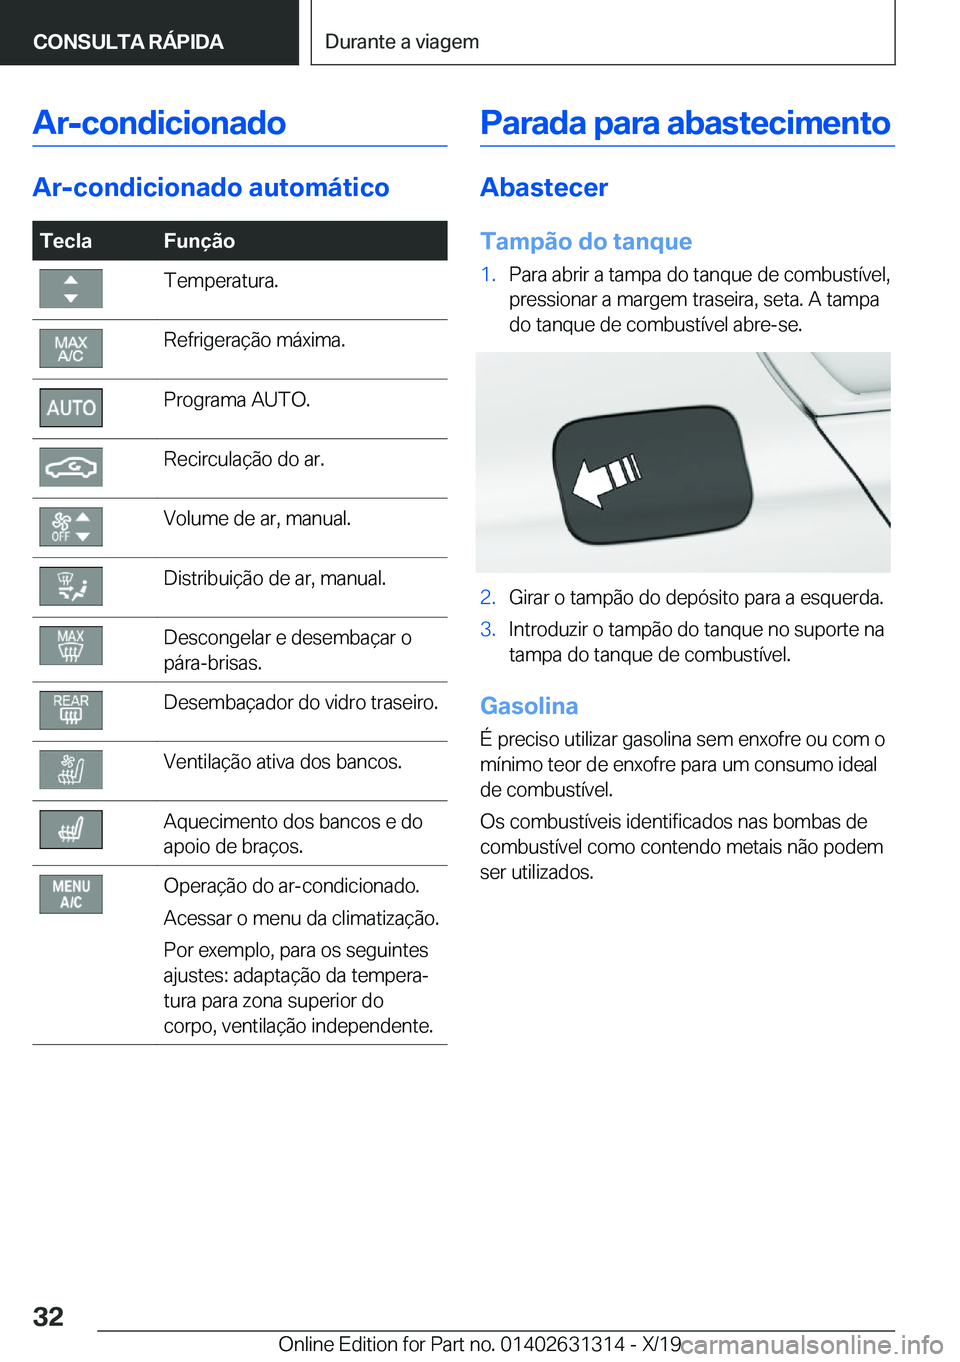 BMW M8 2020  Manual do condutor (in Portuguese) �A�r�-�c�o�n�d�i�c�i�o�n�a�d�o
�A�r�-�c�o�n�d�i�c�i�o�n�a�d�o��a�u�t�o�m�á�t�i�c�o
�T�e�c�l�a�F�u�n�